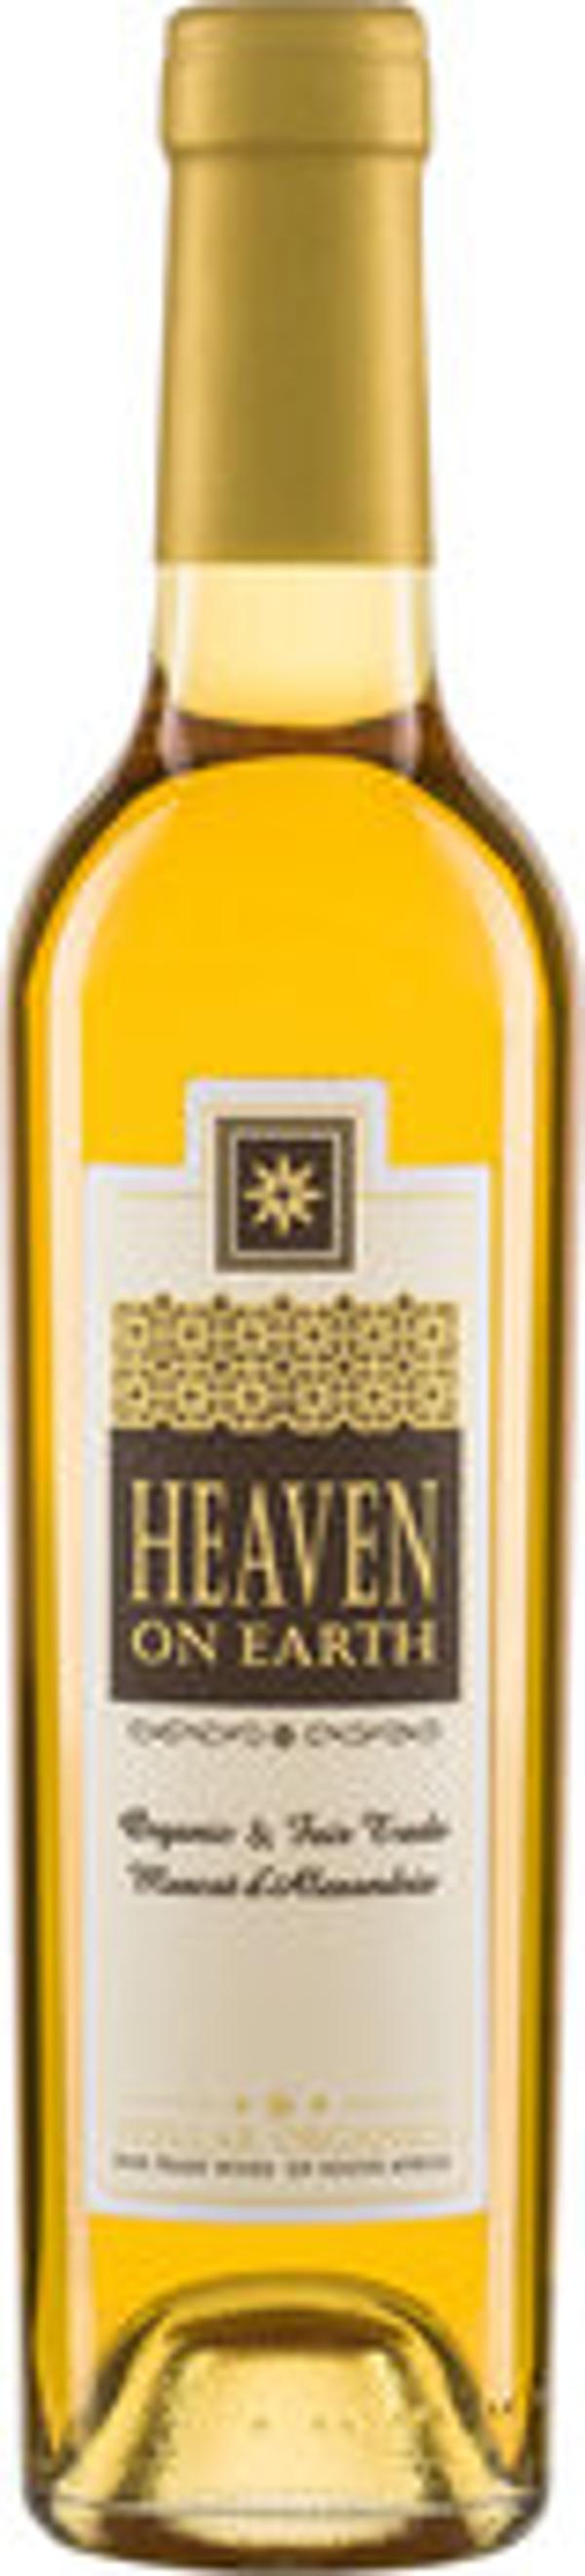 Produktfoto zu Muscat 'Heaven on Earth' Stellar Organics, Dessertwein süß 0,375l